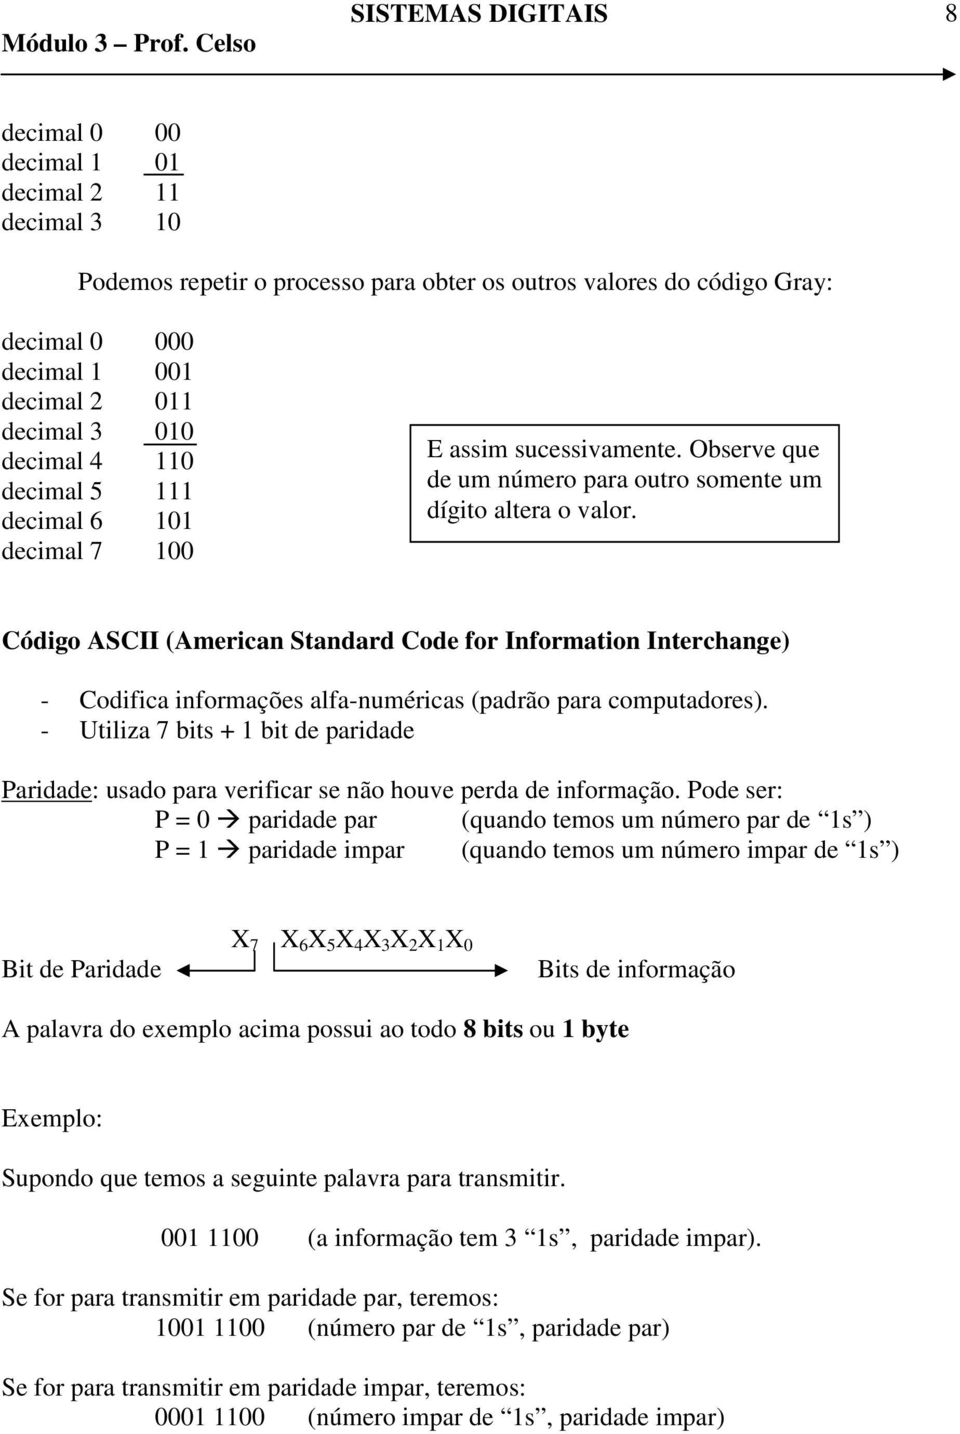 Código ASCII (American Standard Code for Information Interchange) - Codifica informações alfa-numéricas (padrão para computadores).